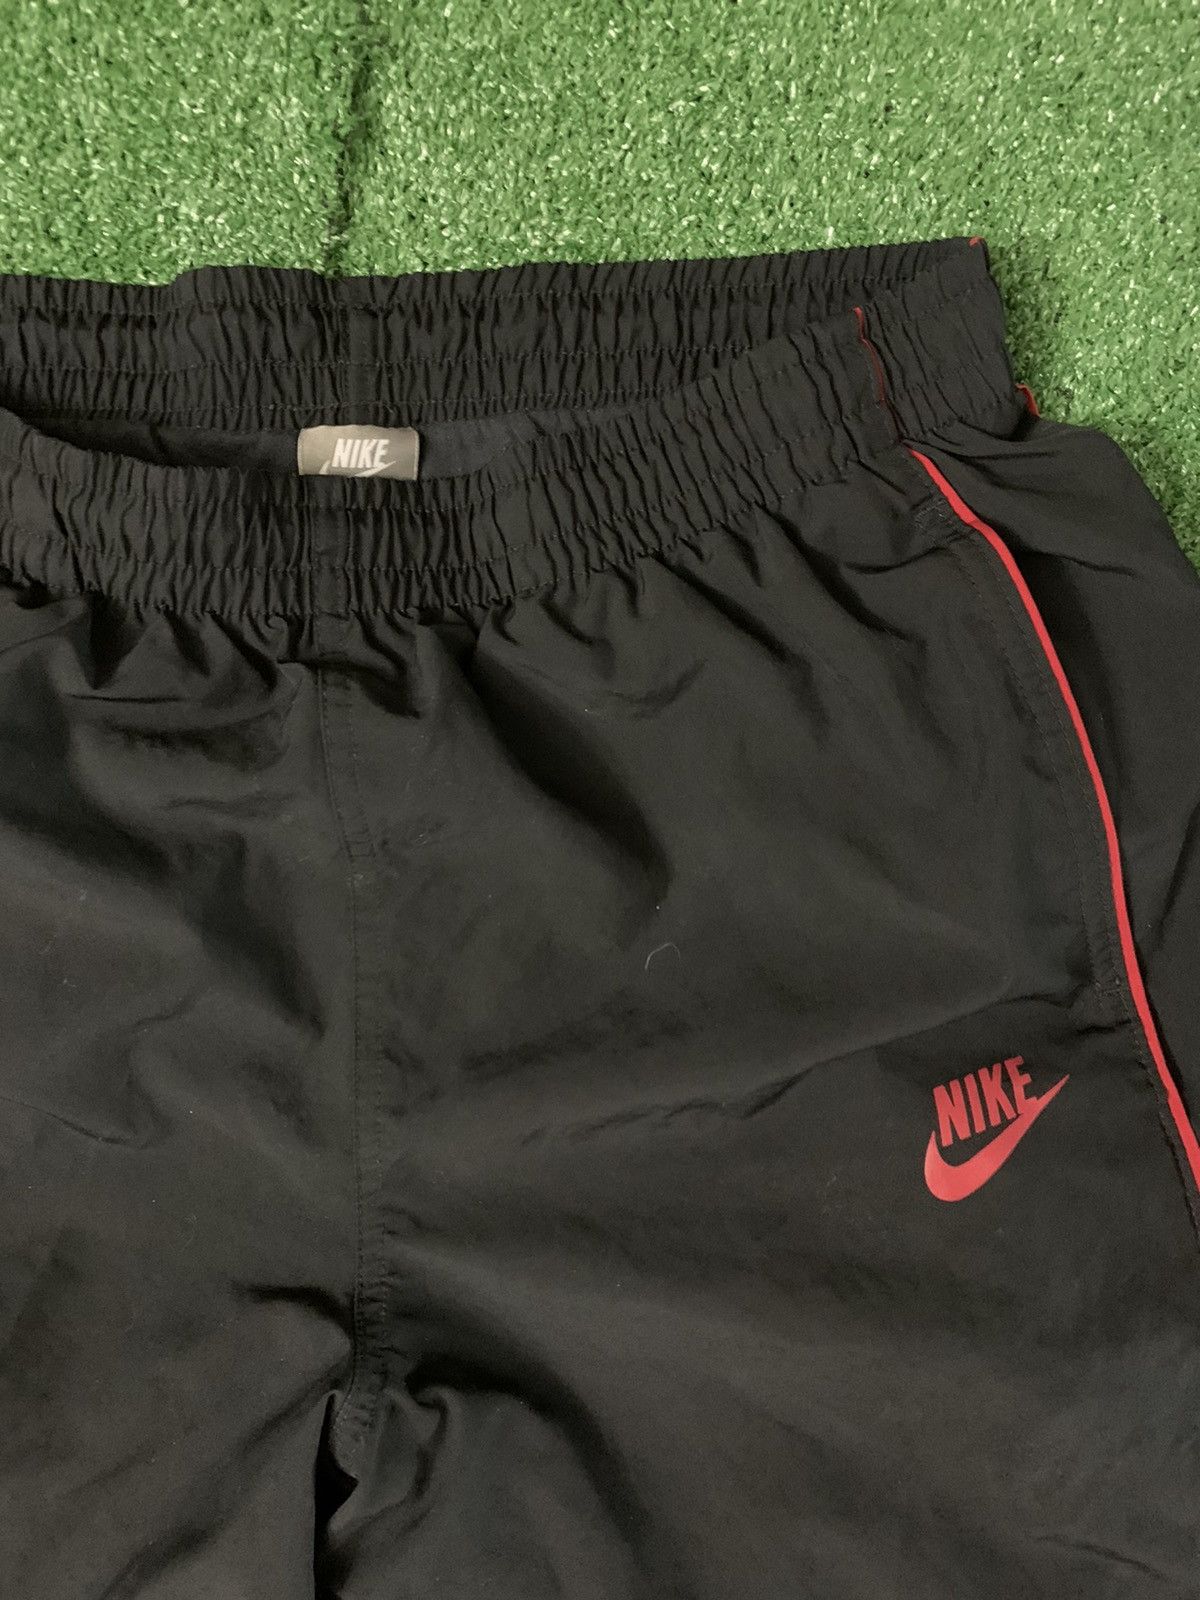 Nike Vintage Nike Sweats Size US 34 / EU 50 - 2 Preview